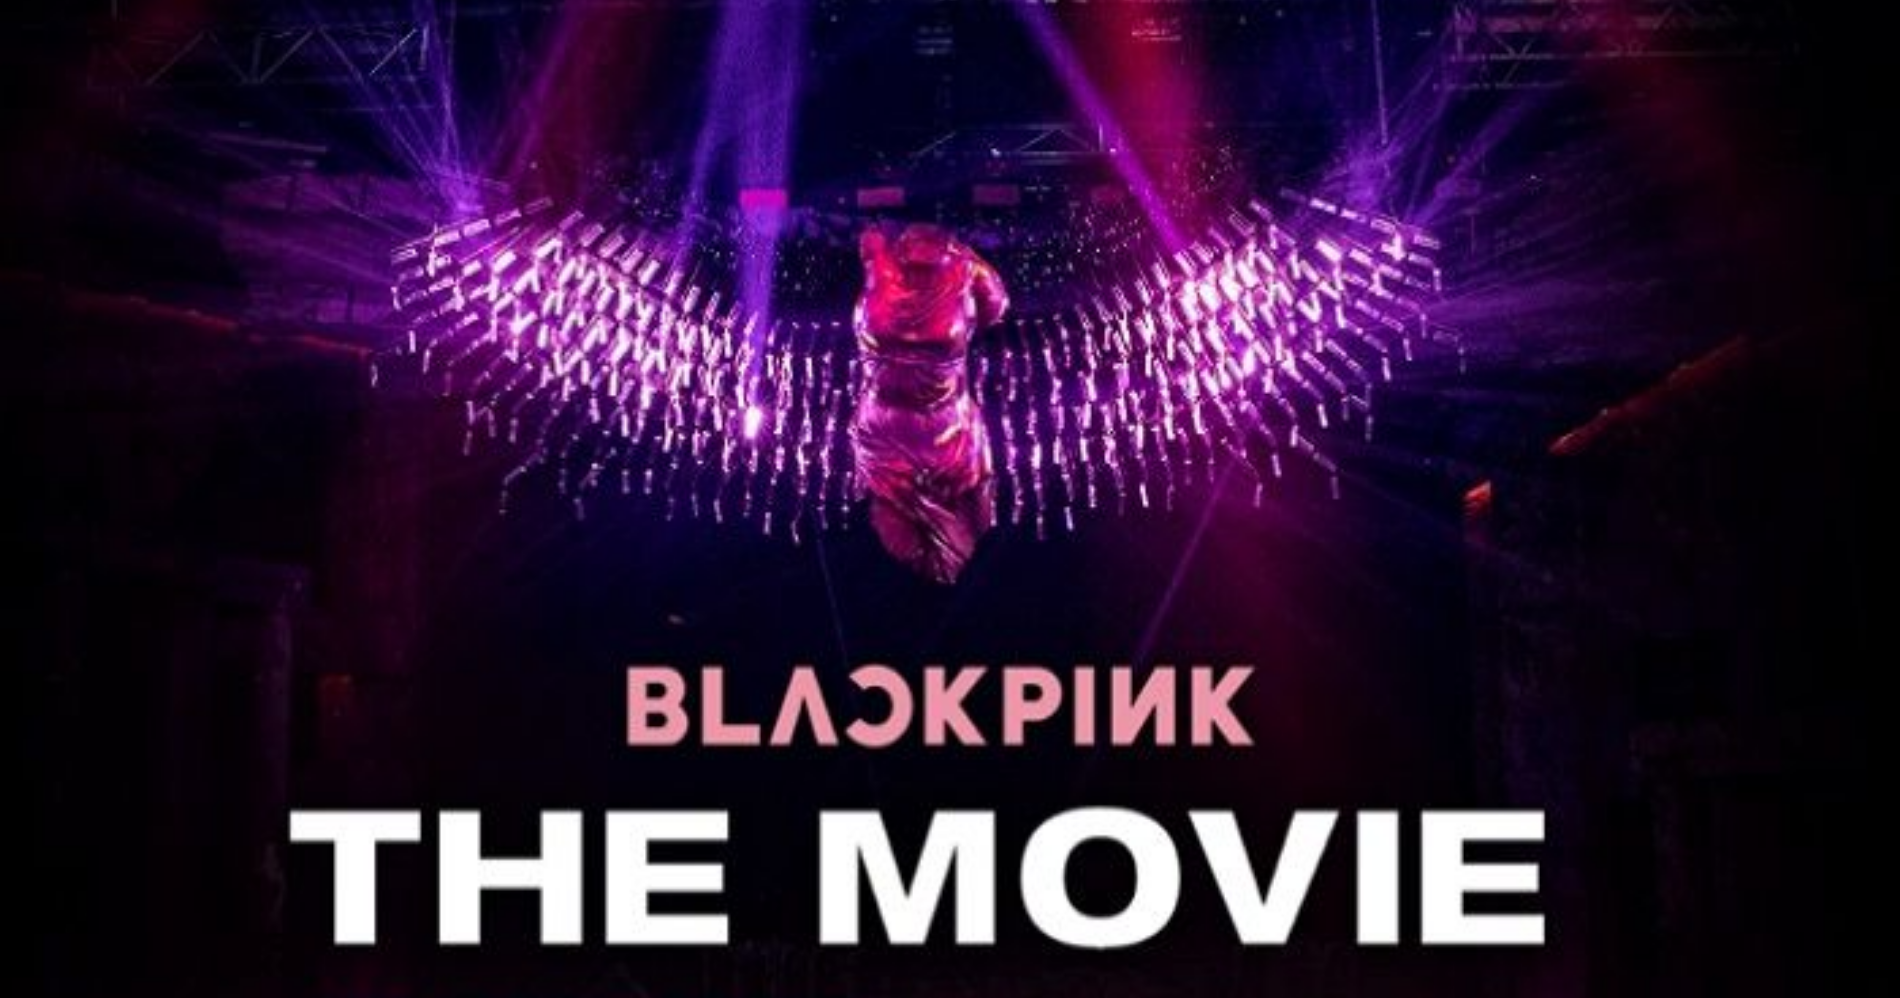 BLACKPINK The Movie Illustration Web Bisnis Muda - Google Images